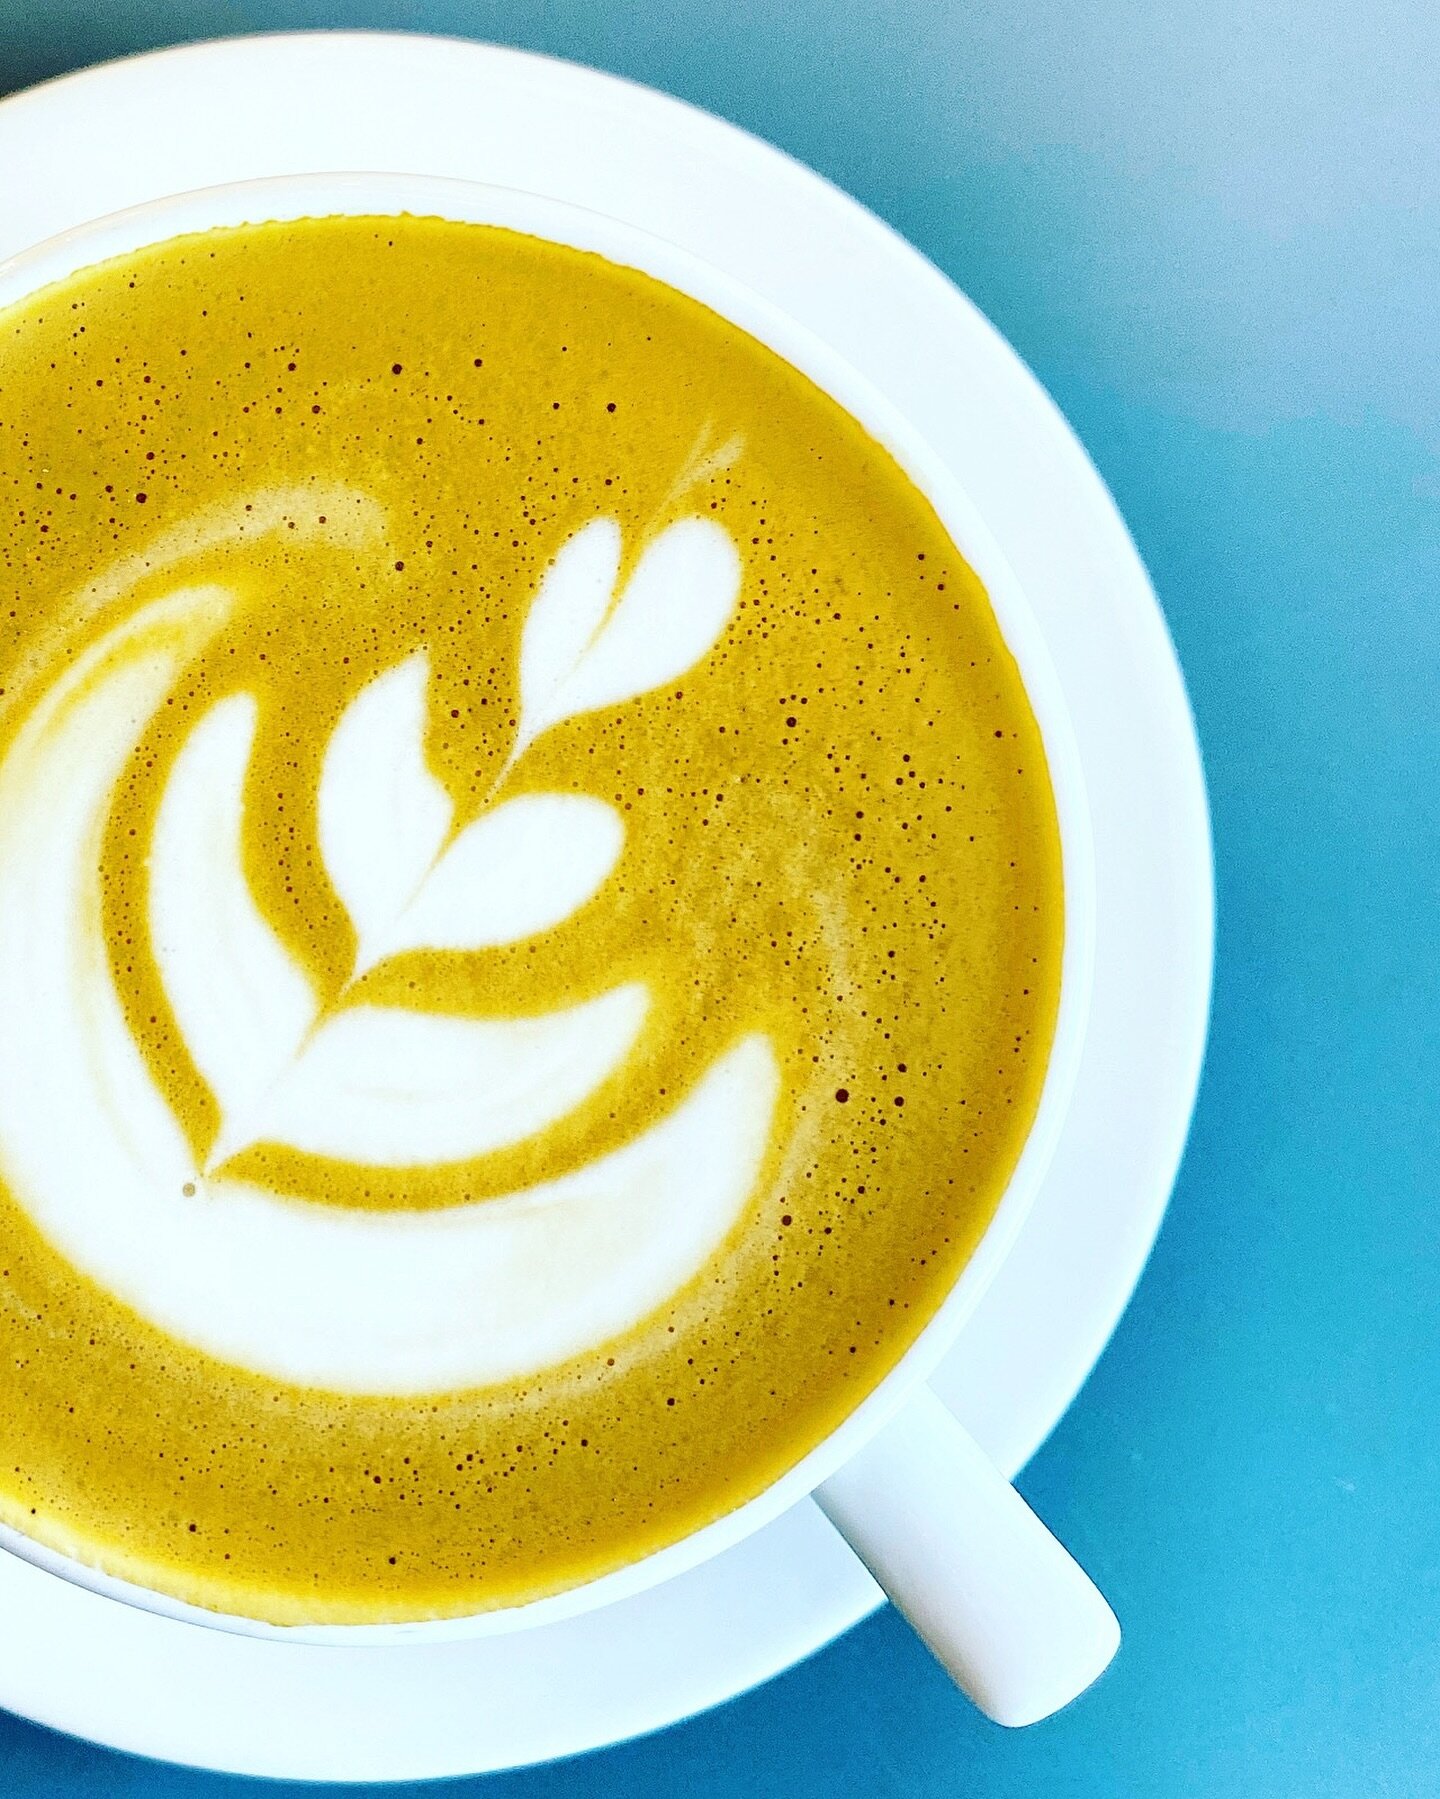 Monday motivation. 
#latteart #mondaymotivation #coffeecoffeecoffee